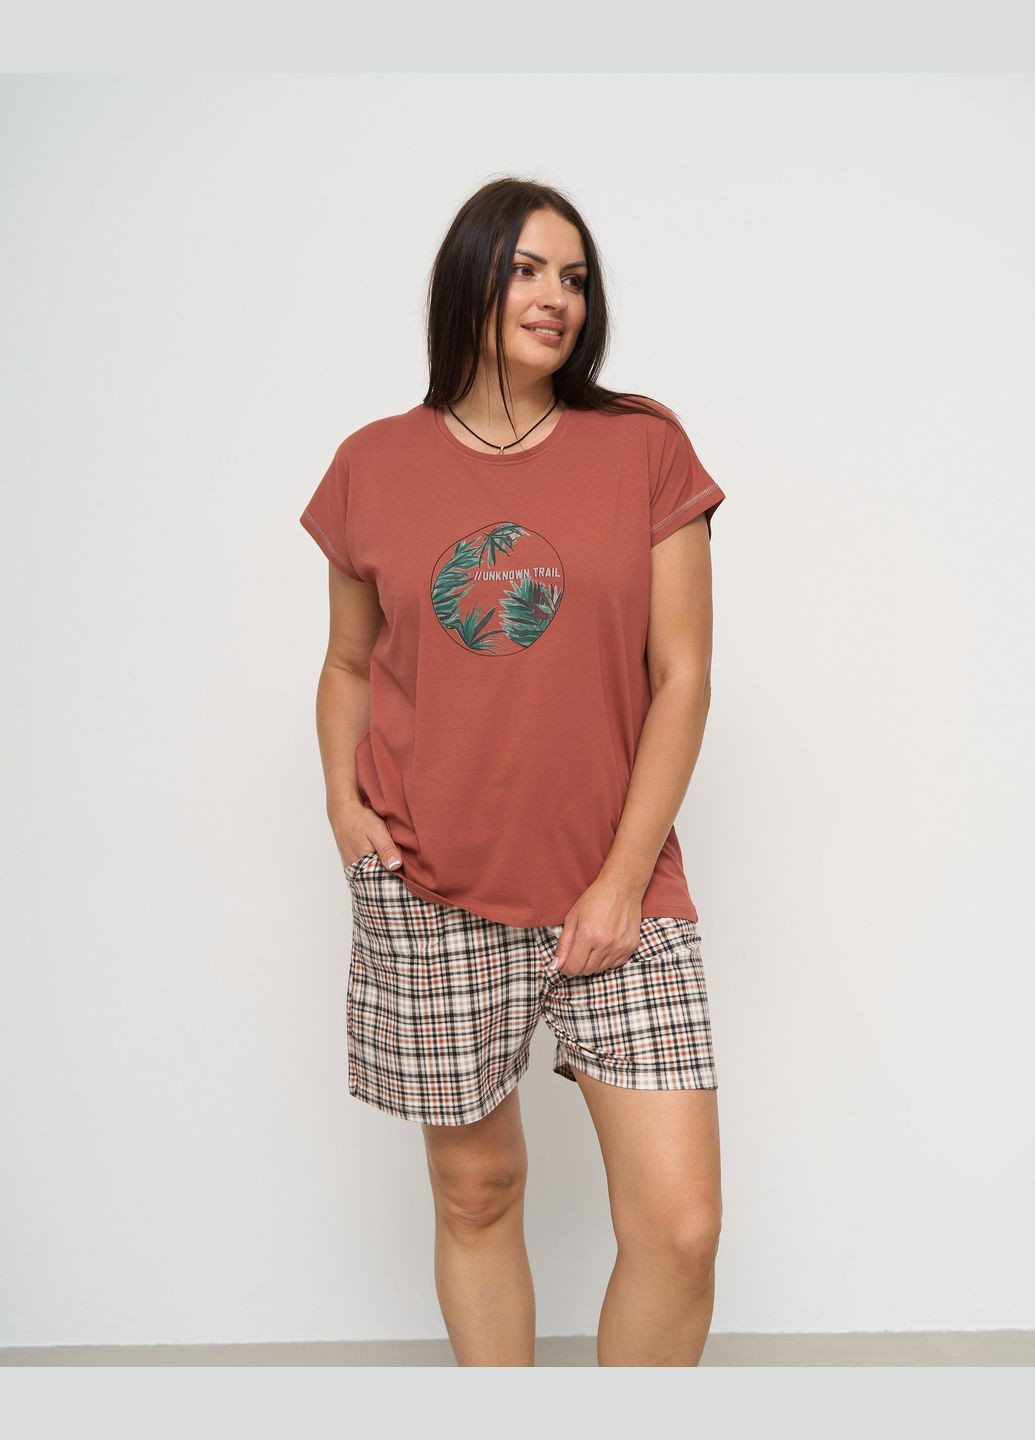 Коралова комплект футболка з шортами в клітинку - батал футболка + шорти Nicoletta